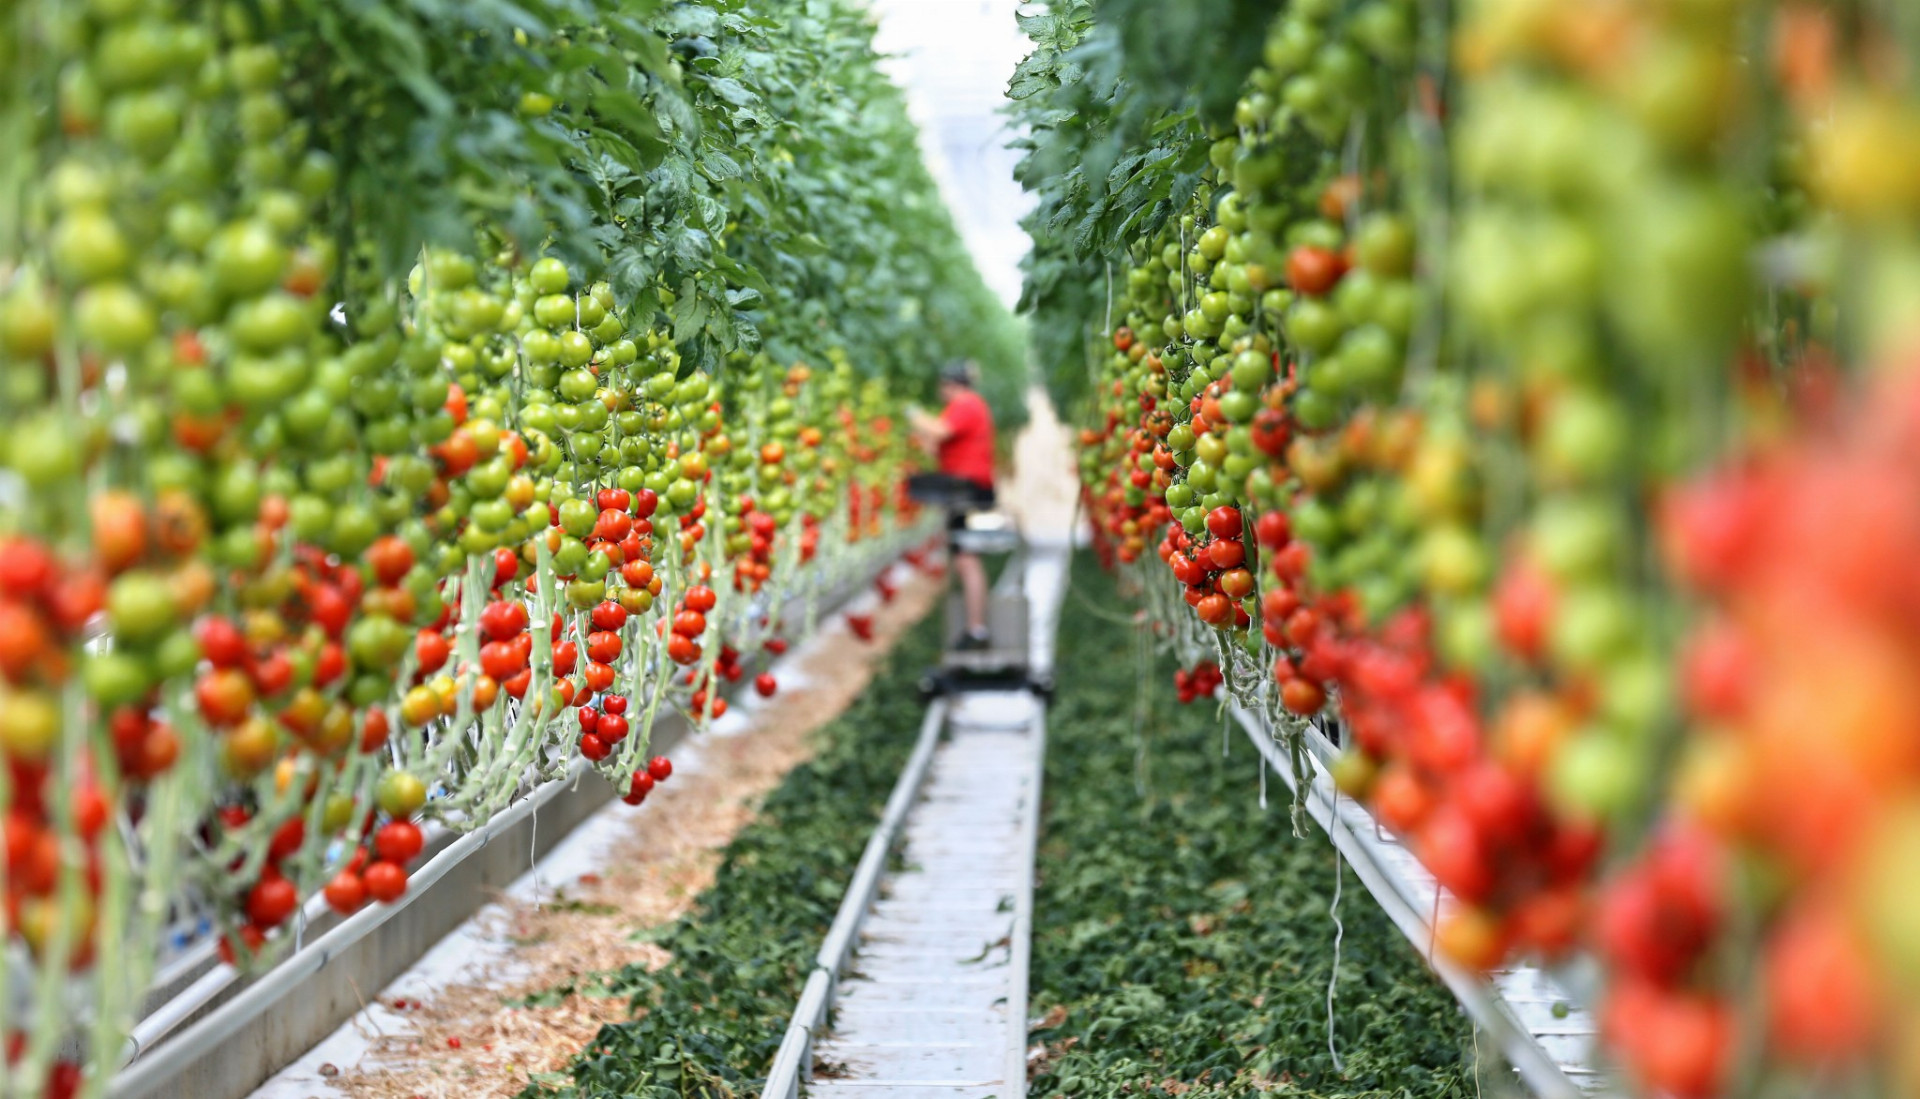 V skleníkoch s rozlohou 15 hektárov tu pestujú štyri druhy rajčín, ktoré sa predávajú v miestnych supermarketoch pod názvom Lutherove paradajky.